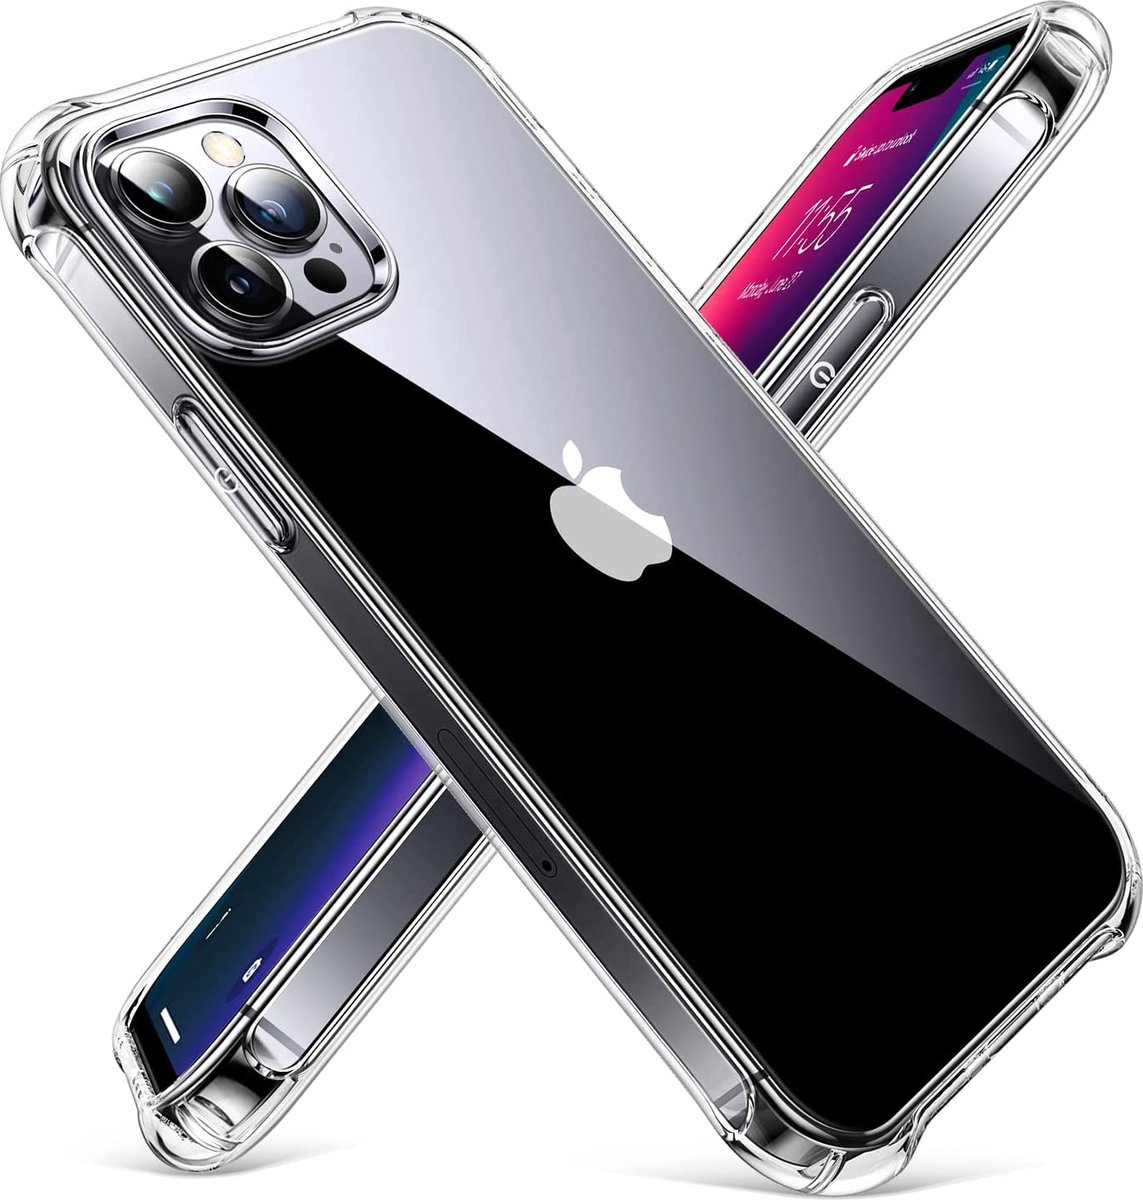 Transparant Hoesje Voor Iphone 12 Pro Max - Clear Case - Siliconen - Shock Proof - Military Grade - Doorzichtig - Anti Stoot Hoeken - Voor Iphone 12 Pro Max 6,7 Inch